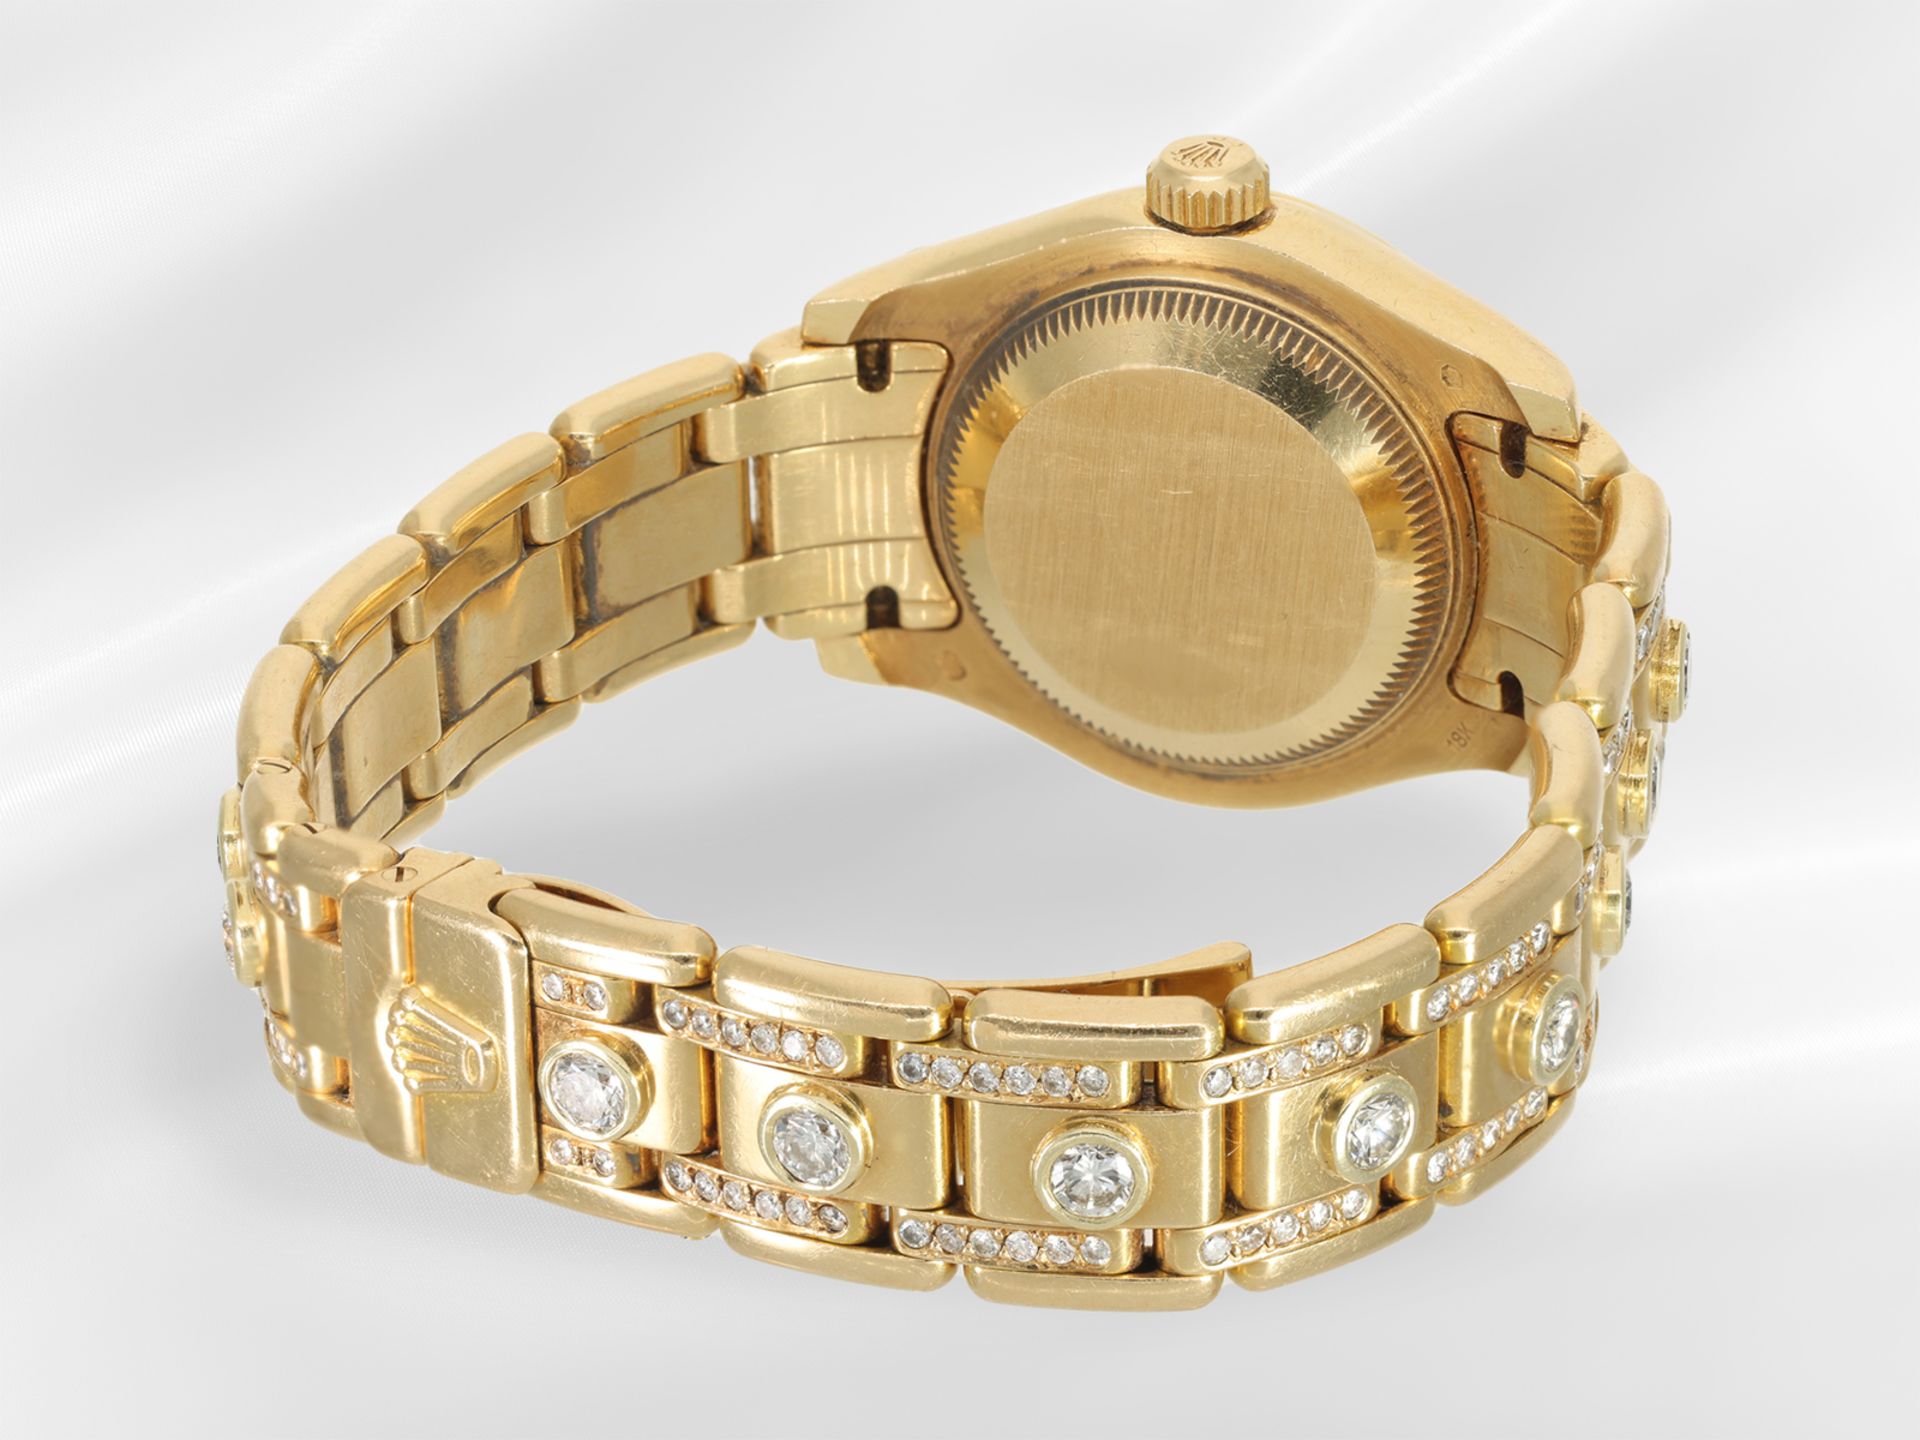 Armbanduhr: gesuchte luxuriöse Damenuhr Rolex Pearlmaster 29 mit Brillantbesatz und Diamantzifferbla - Bild 6 aus 6